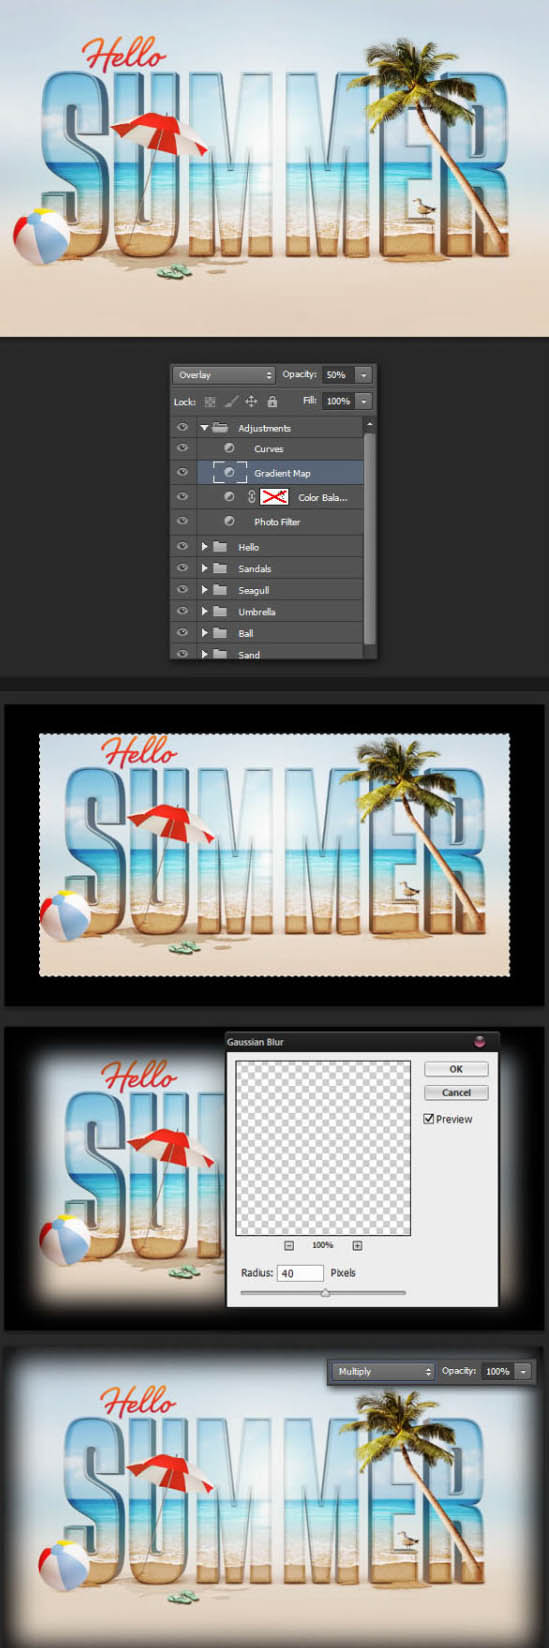 Photoshop文字特效教程 制作漂亮的夏天沙滩立体字效果 图62